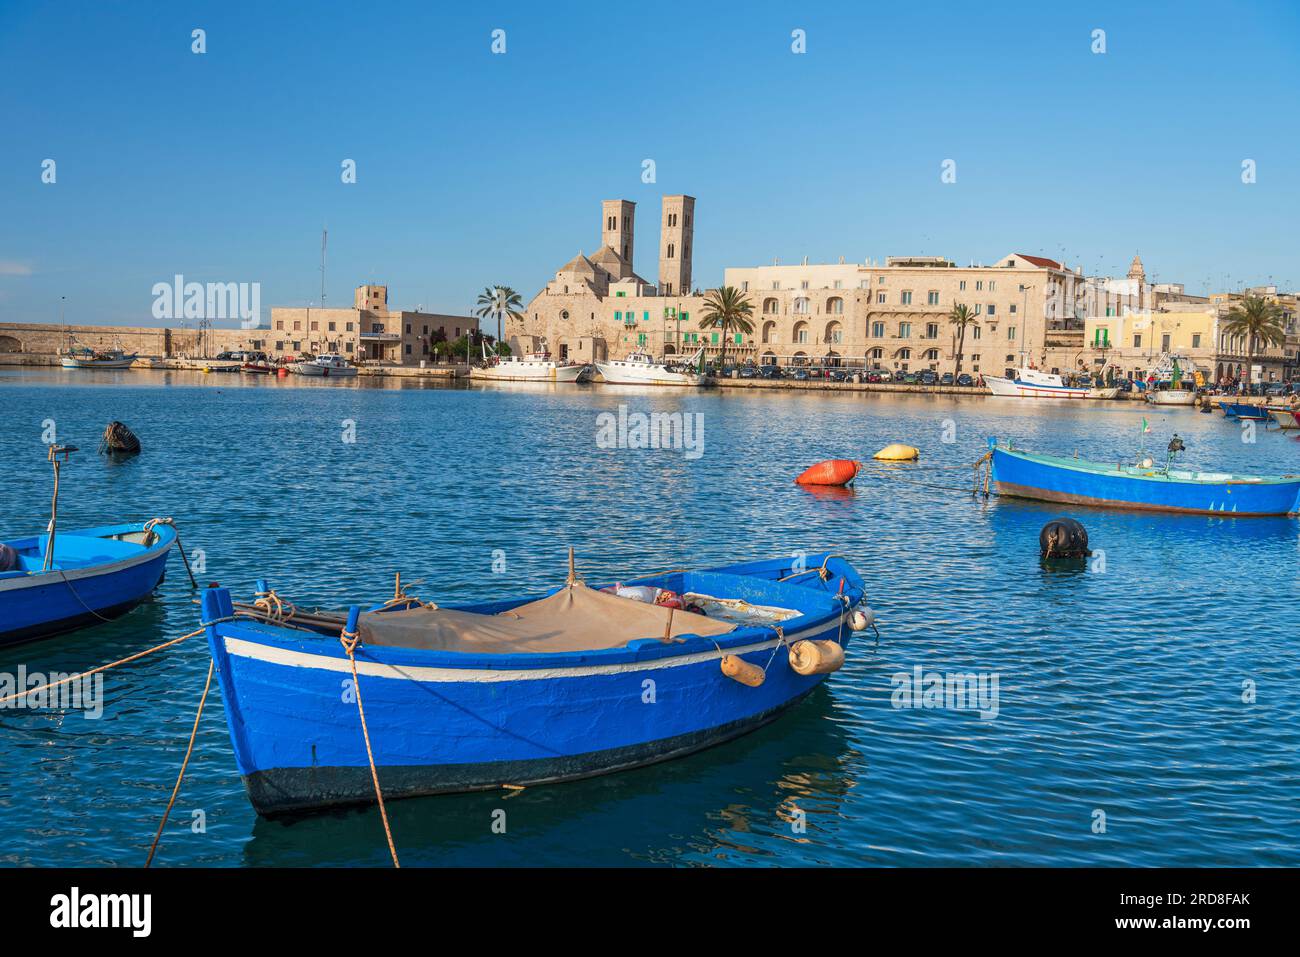 Petits bateaux bleus amarrés dans l'eau du port de la vieille ville médiévale de Barletta, mer Adriatique, mer Méditerranée, Pouilles, Italie, Europe Banque D'Images